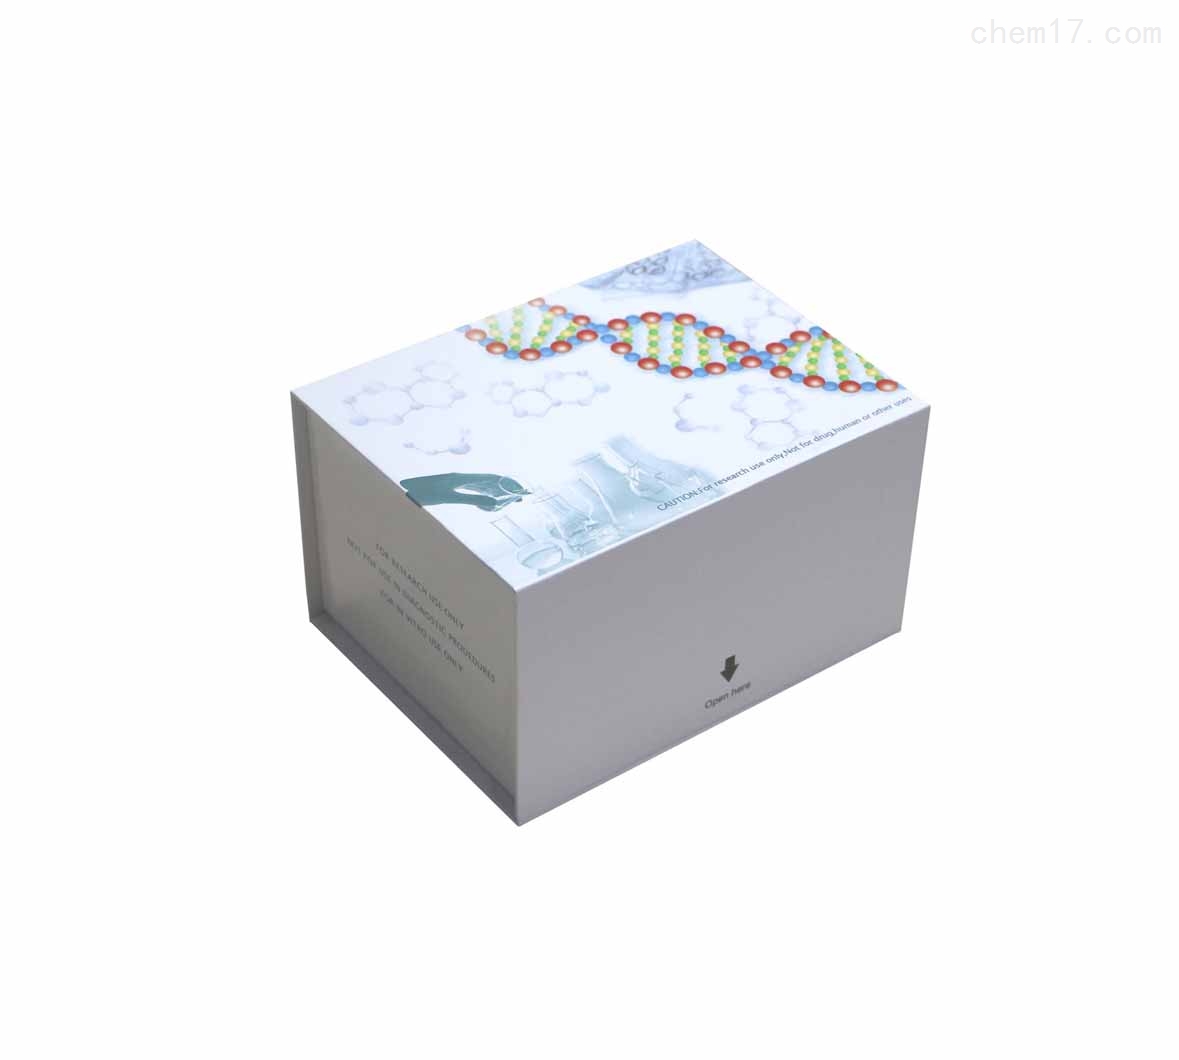 催乳素(PRL)ELISA试剂盒买家推荐